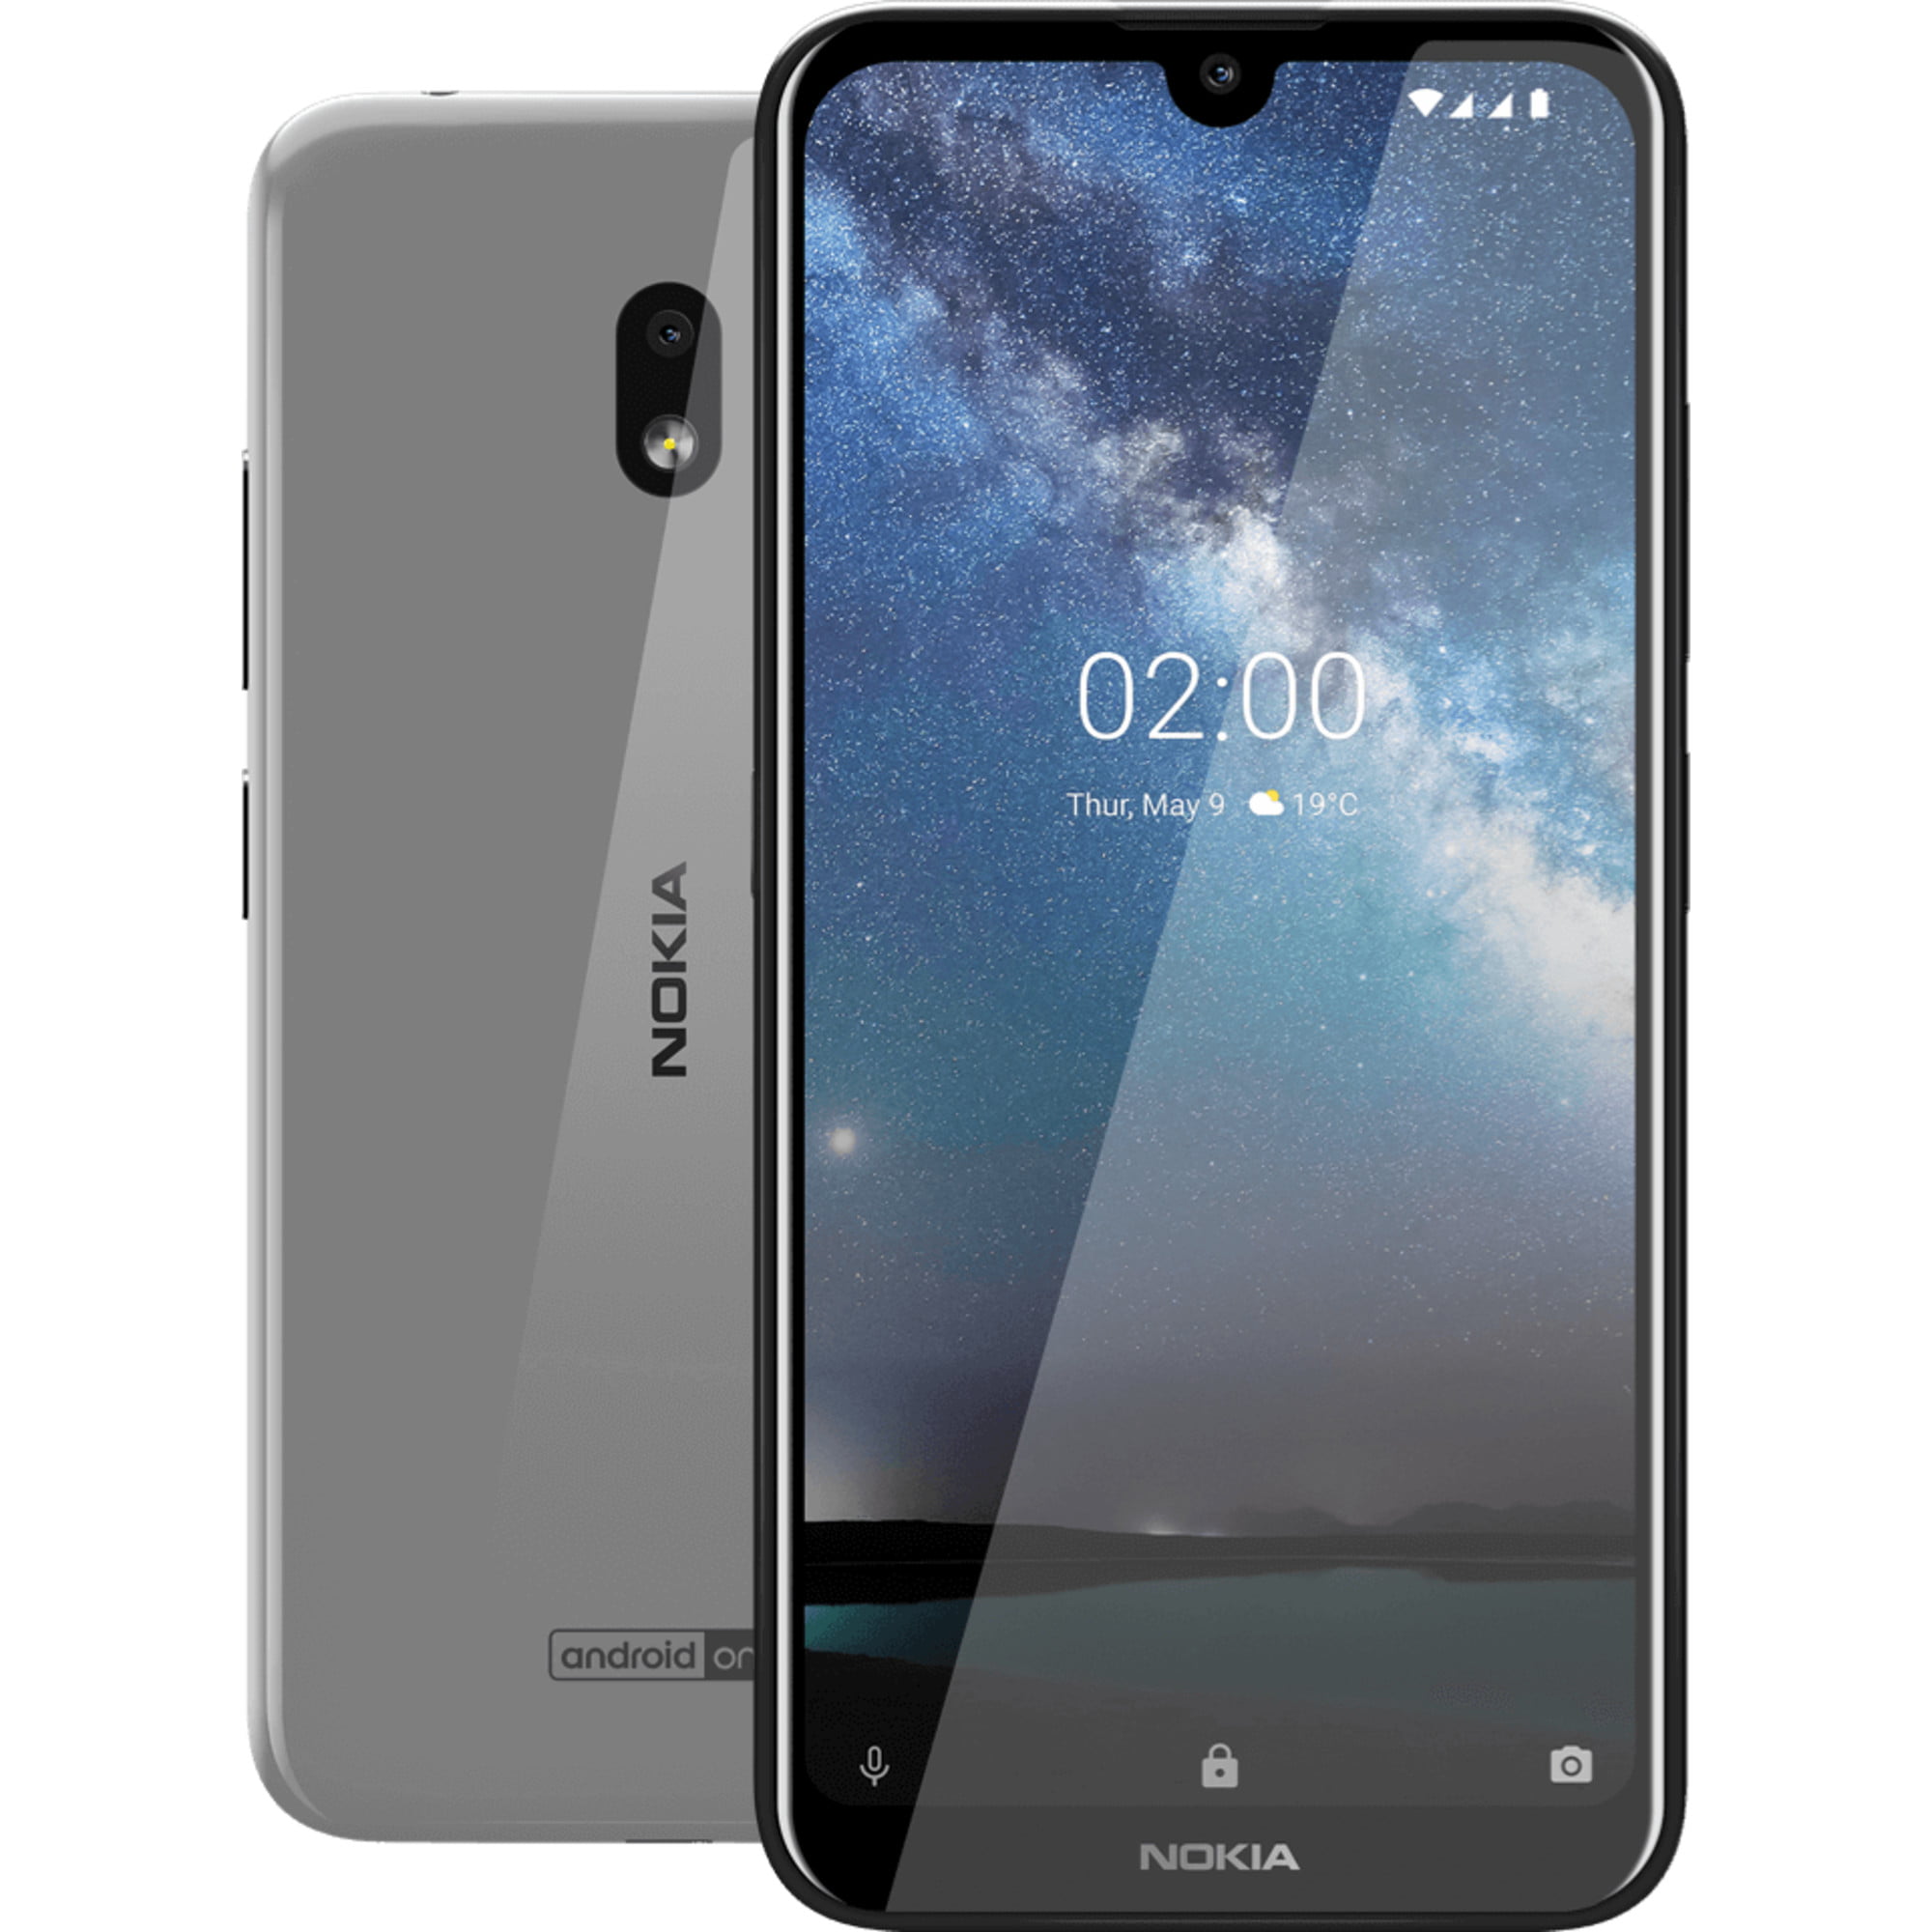 2. Nokia 8 Sirocco — high-end